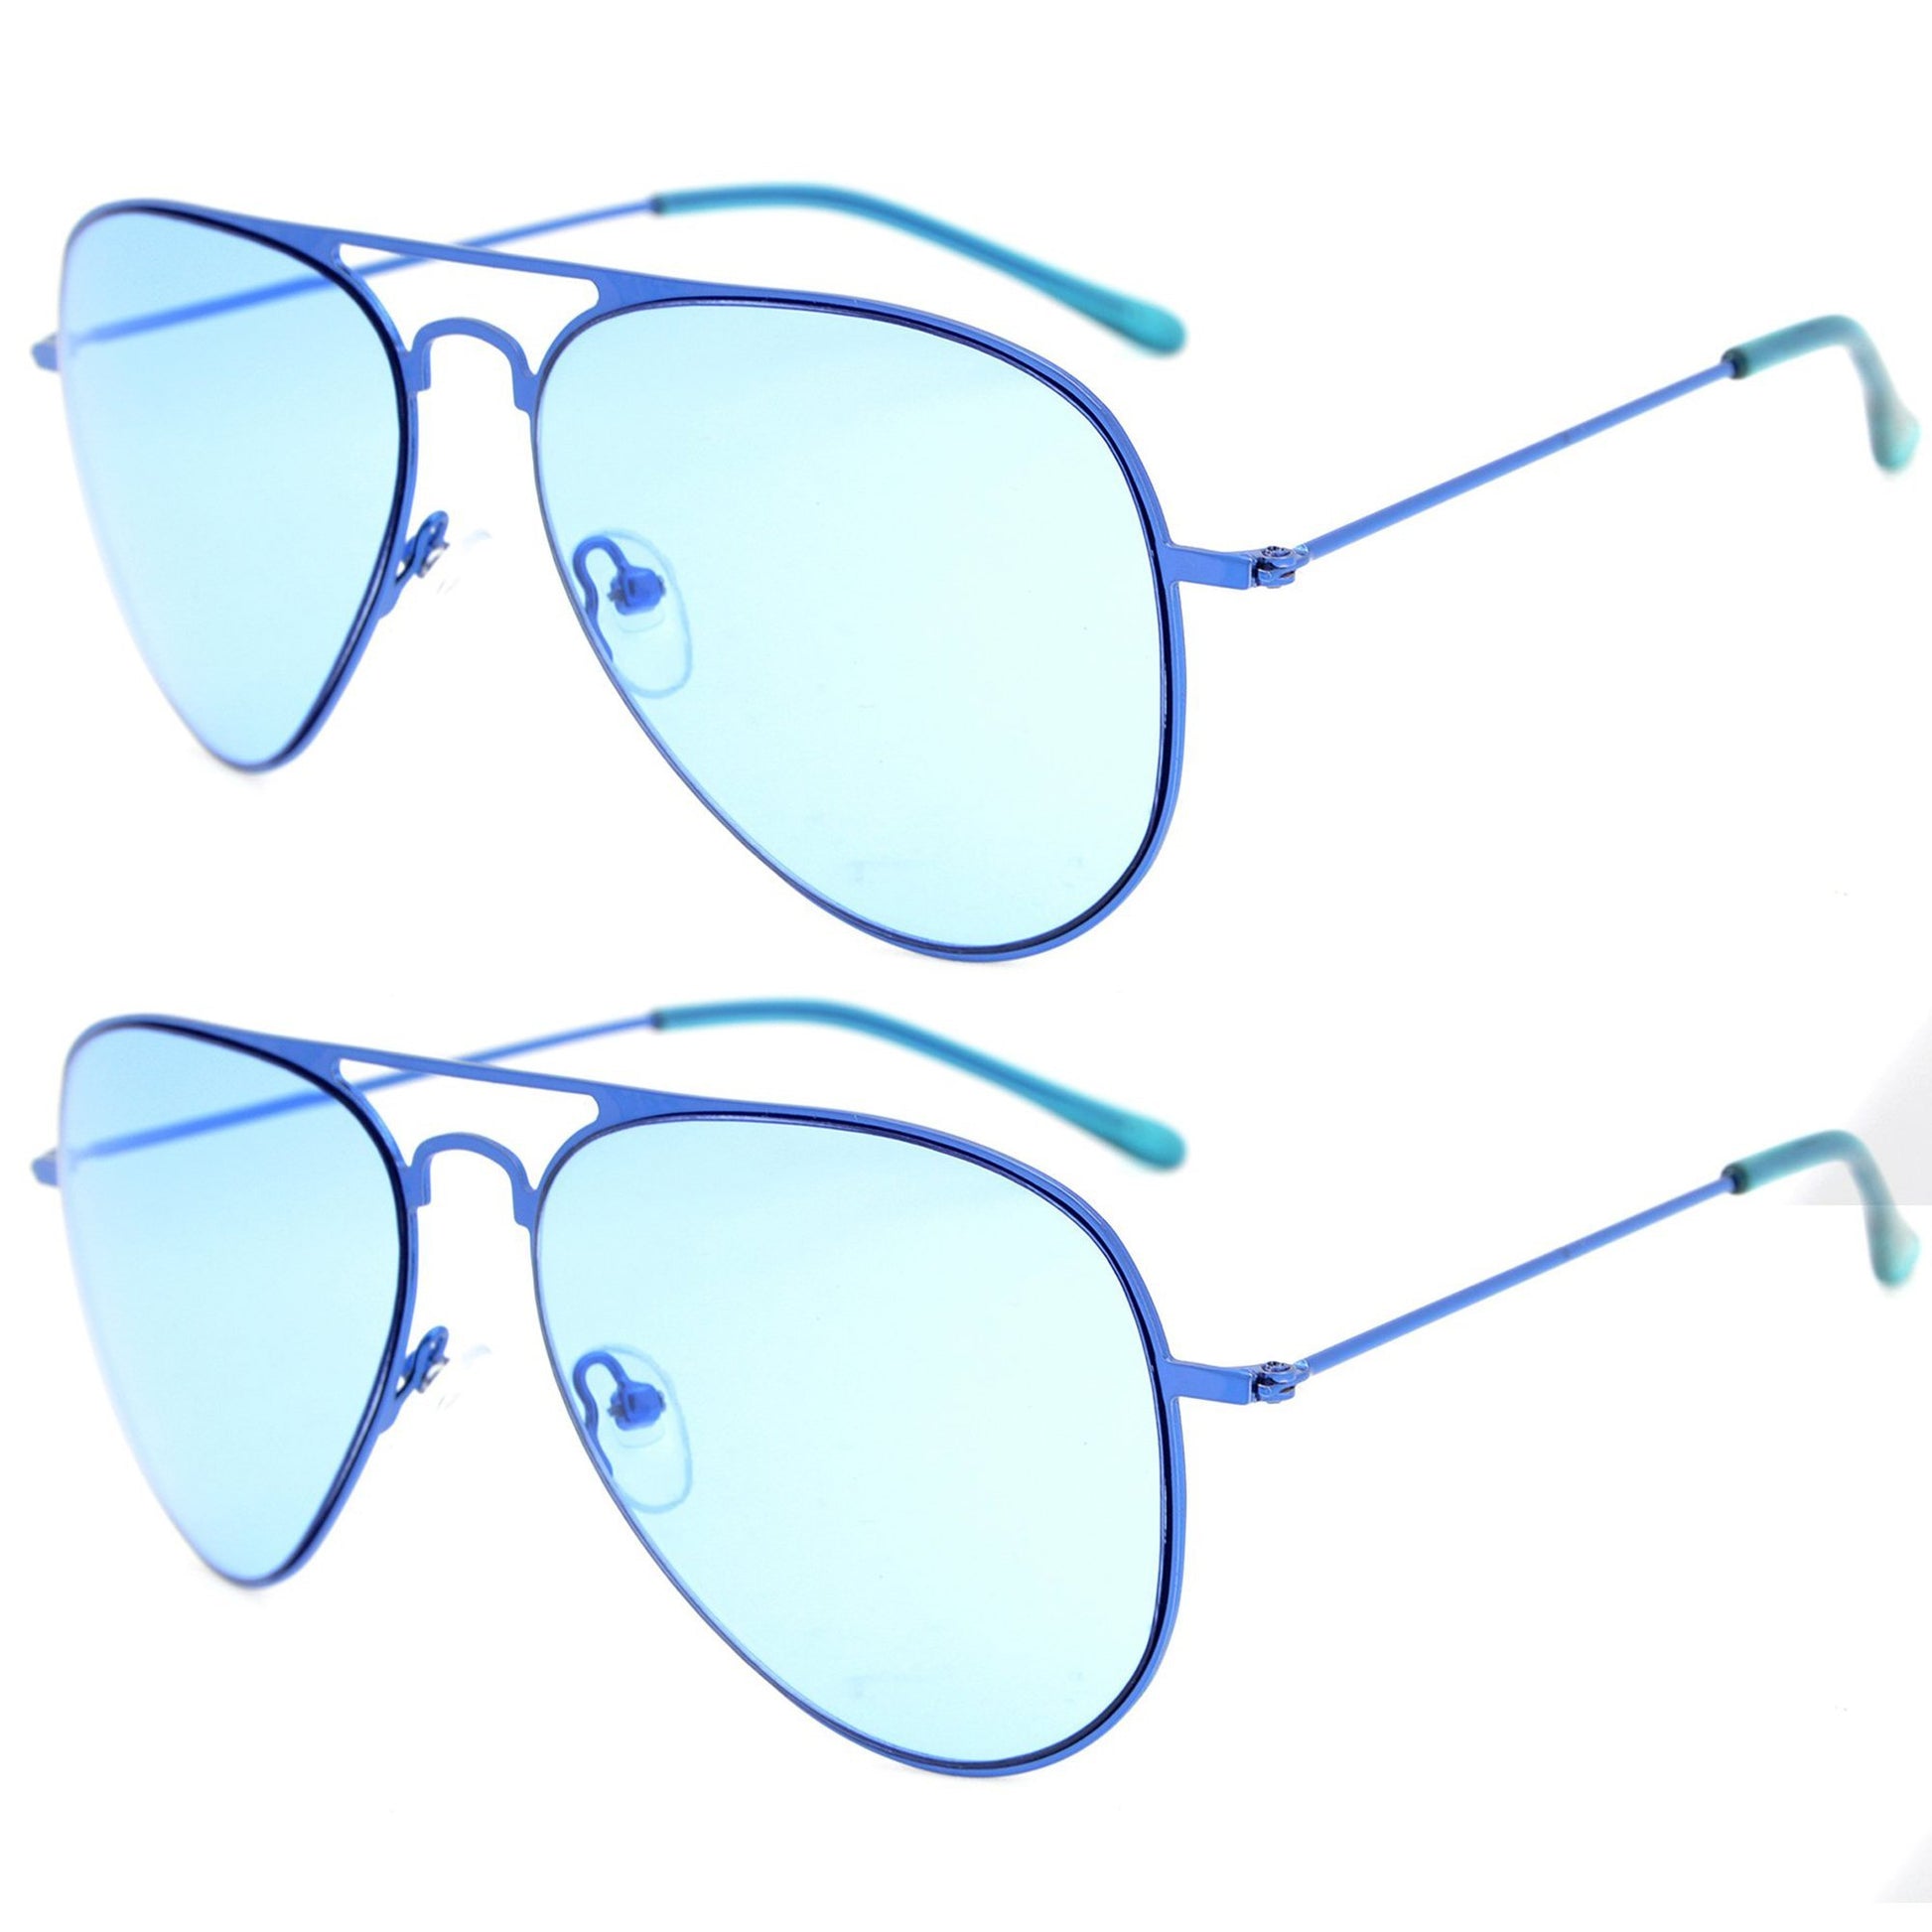 Stylish Sunglasses for Boys Girls Blue Lens S15018